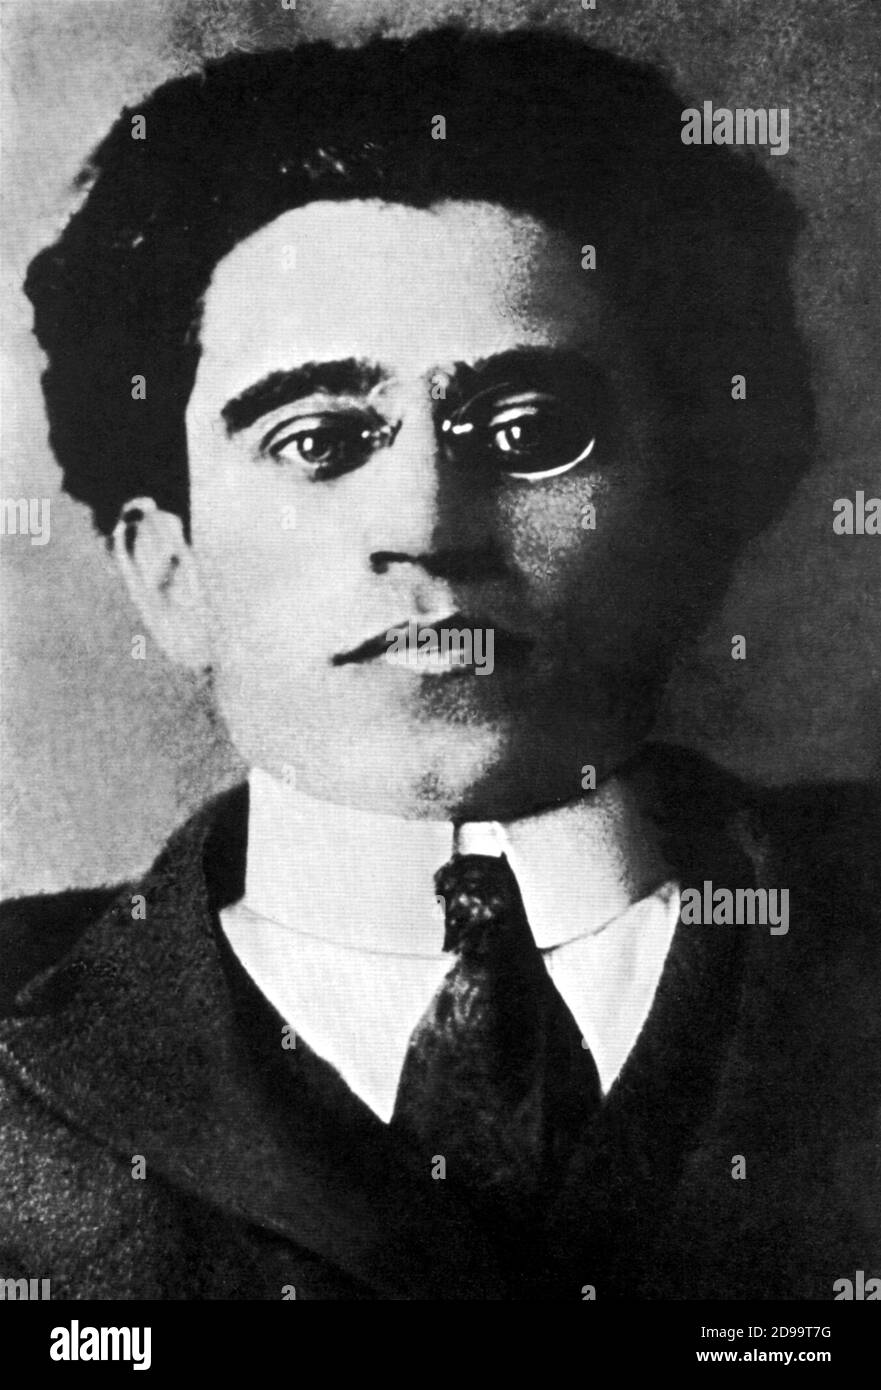 Le politicien italien et intellectuel ANTONIO GRAMSCI ( 1891 - 1937 ) - POLITICO - INTELLETTUALE di SINISTRA - PERSEGUITATO - vittima del FASCISMO - PSI - PARTITO SOCIALISTA ITALIANO - ANTIFASCISTA - ANTIFASCISMO - critico - scrittore - writer - occhiali - lunettes pince-collier - colletto - Cravatta - ARCHIRITO - portrait - B- GBritvio- Banque D'Images